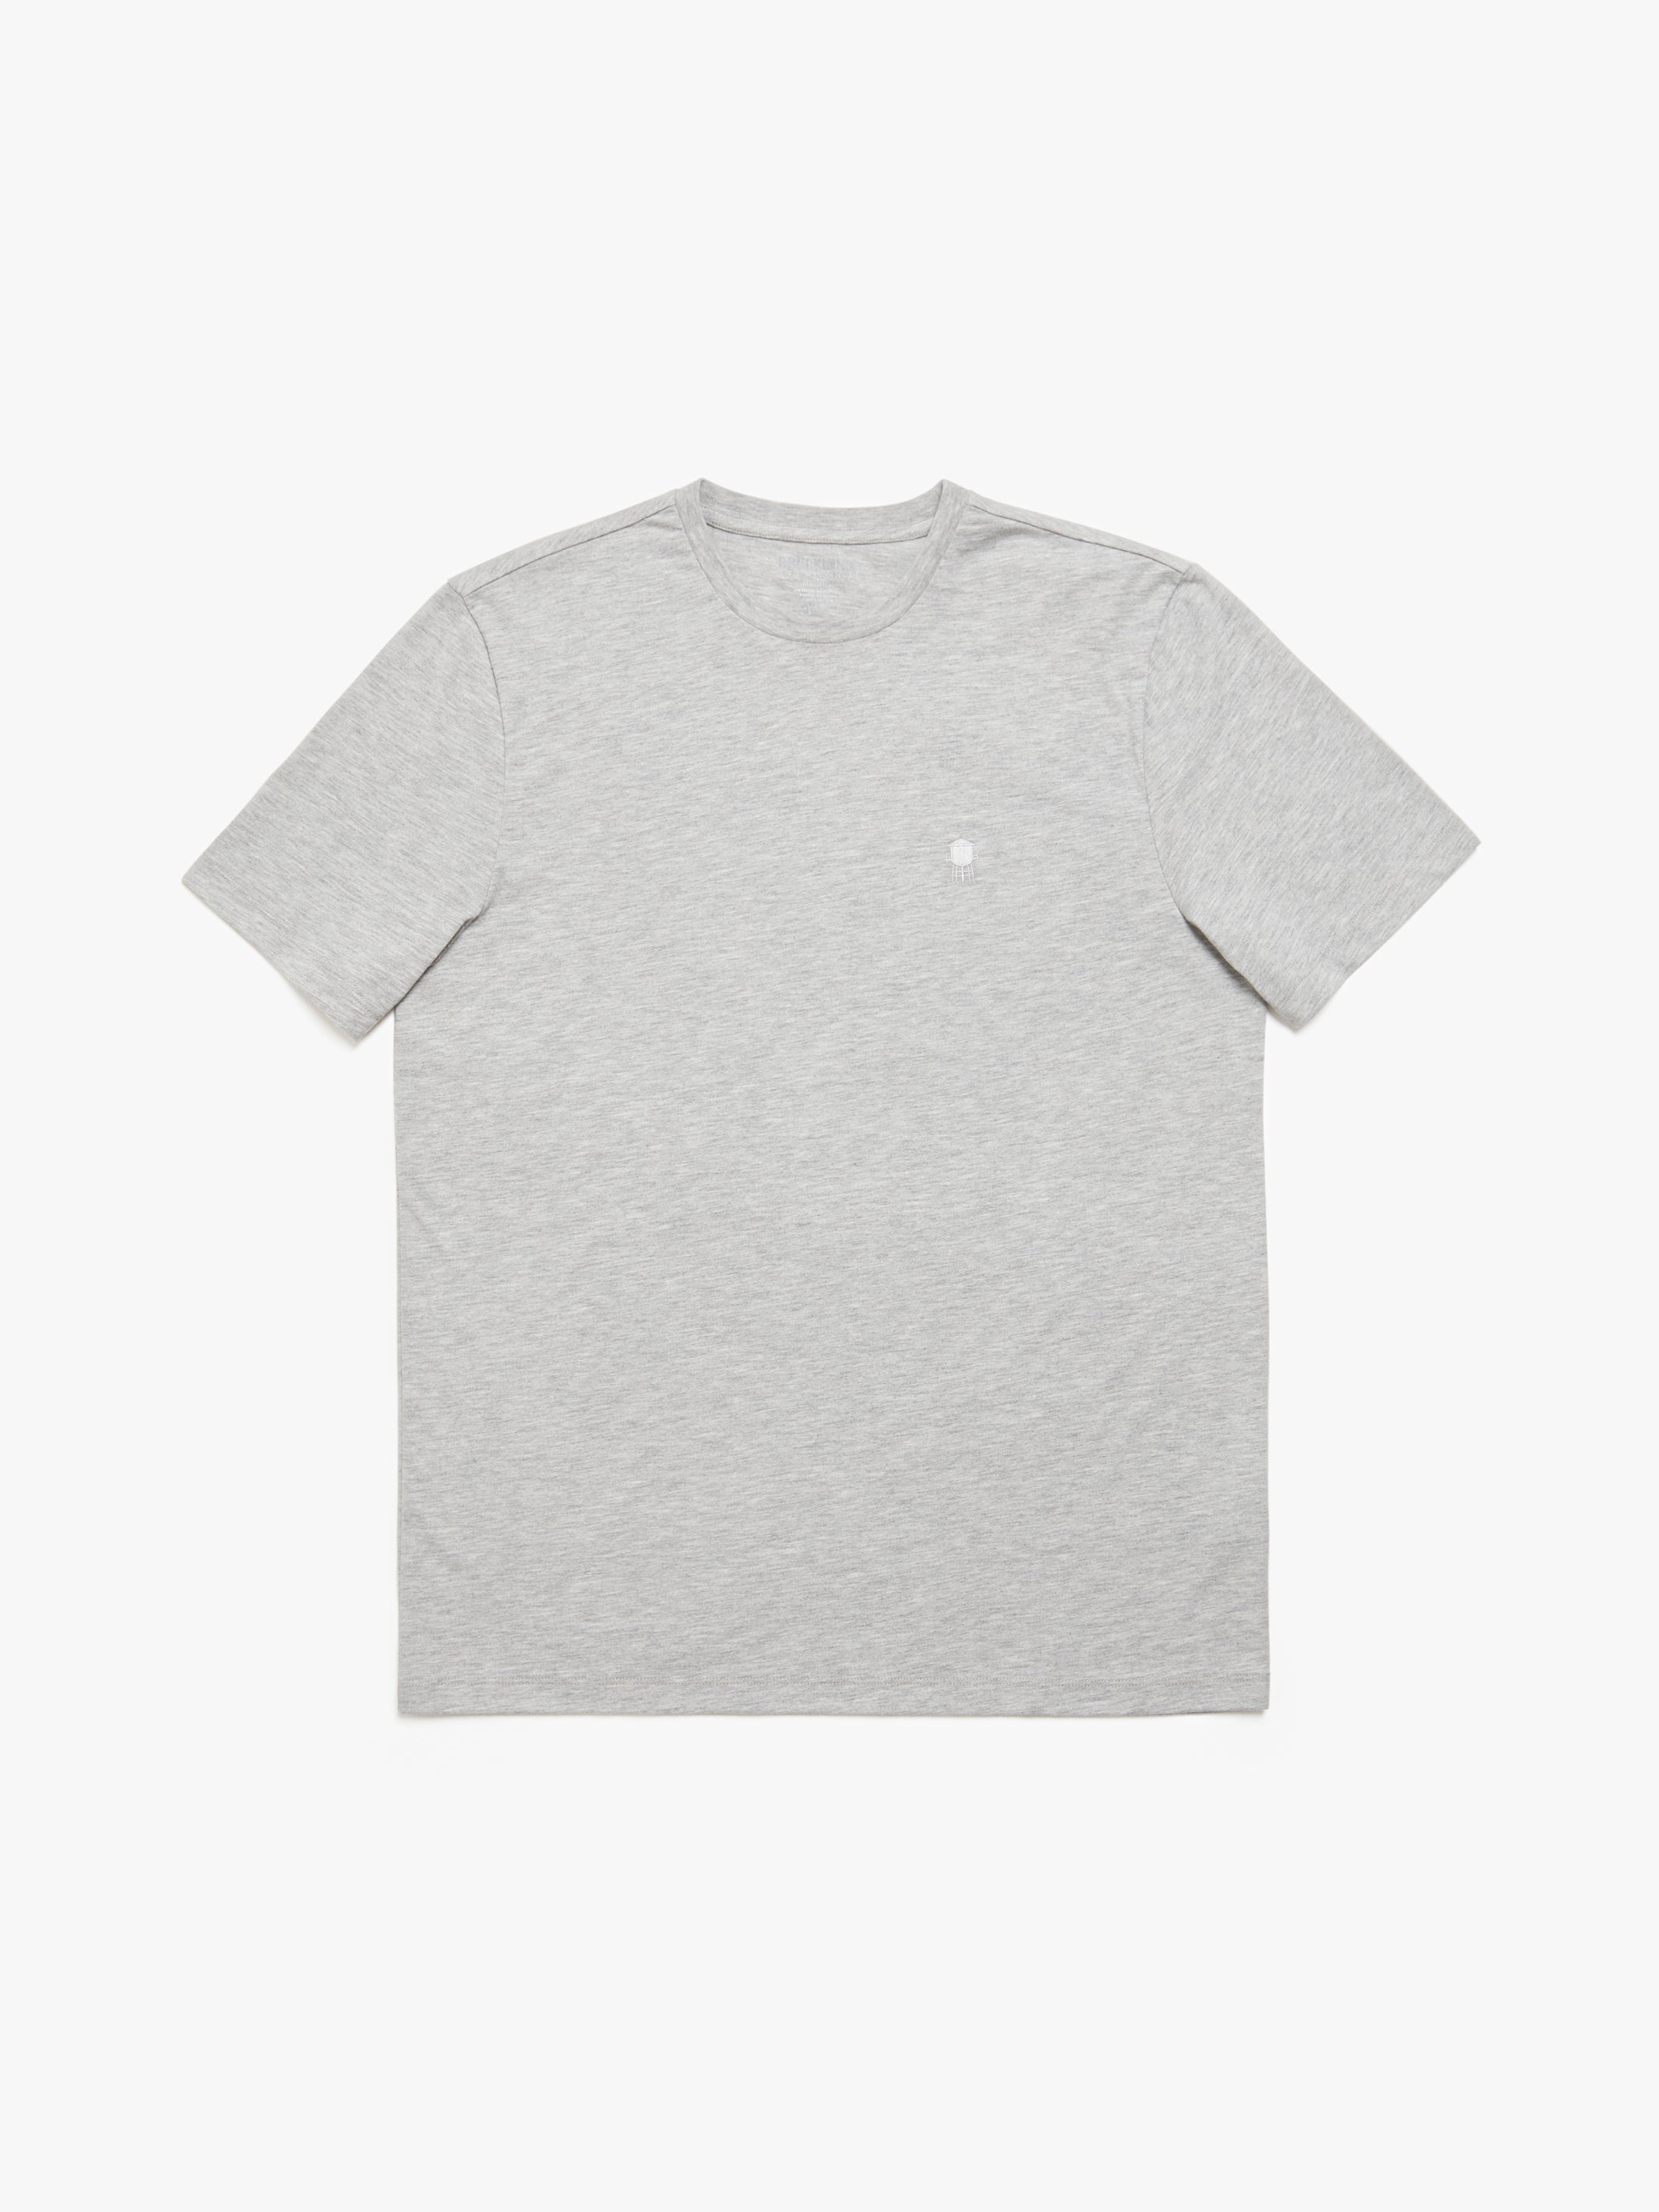 Men's Brooklyn Water Tower T-shirt in Grey Melange - BROOKLYN INDUSTRIES